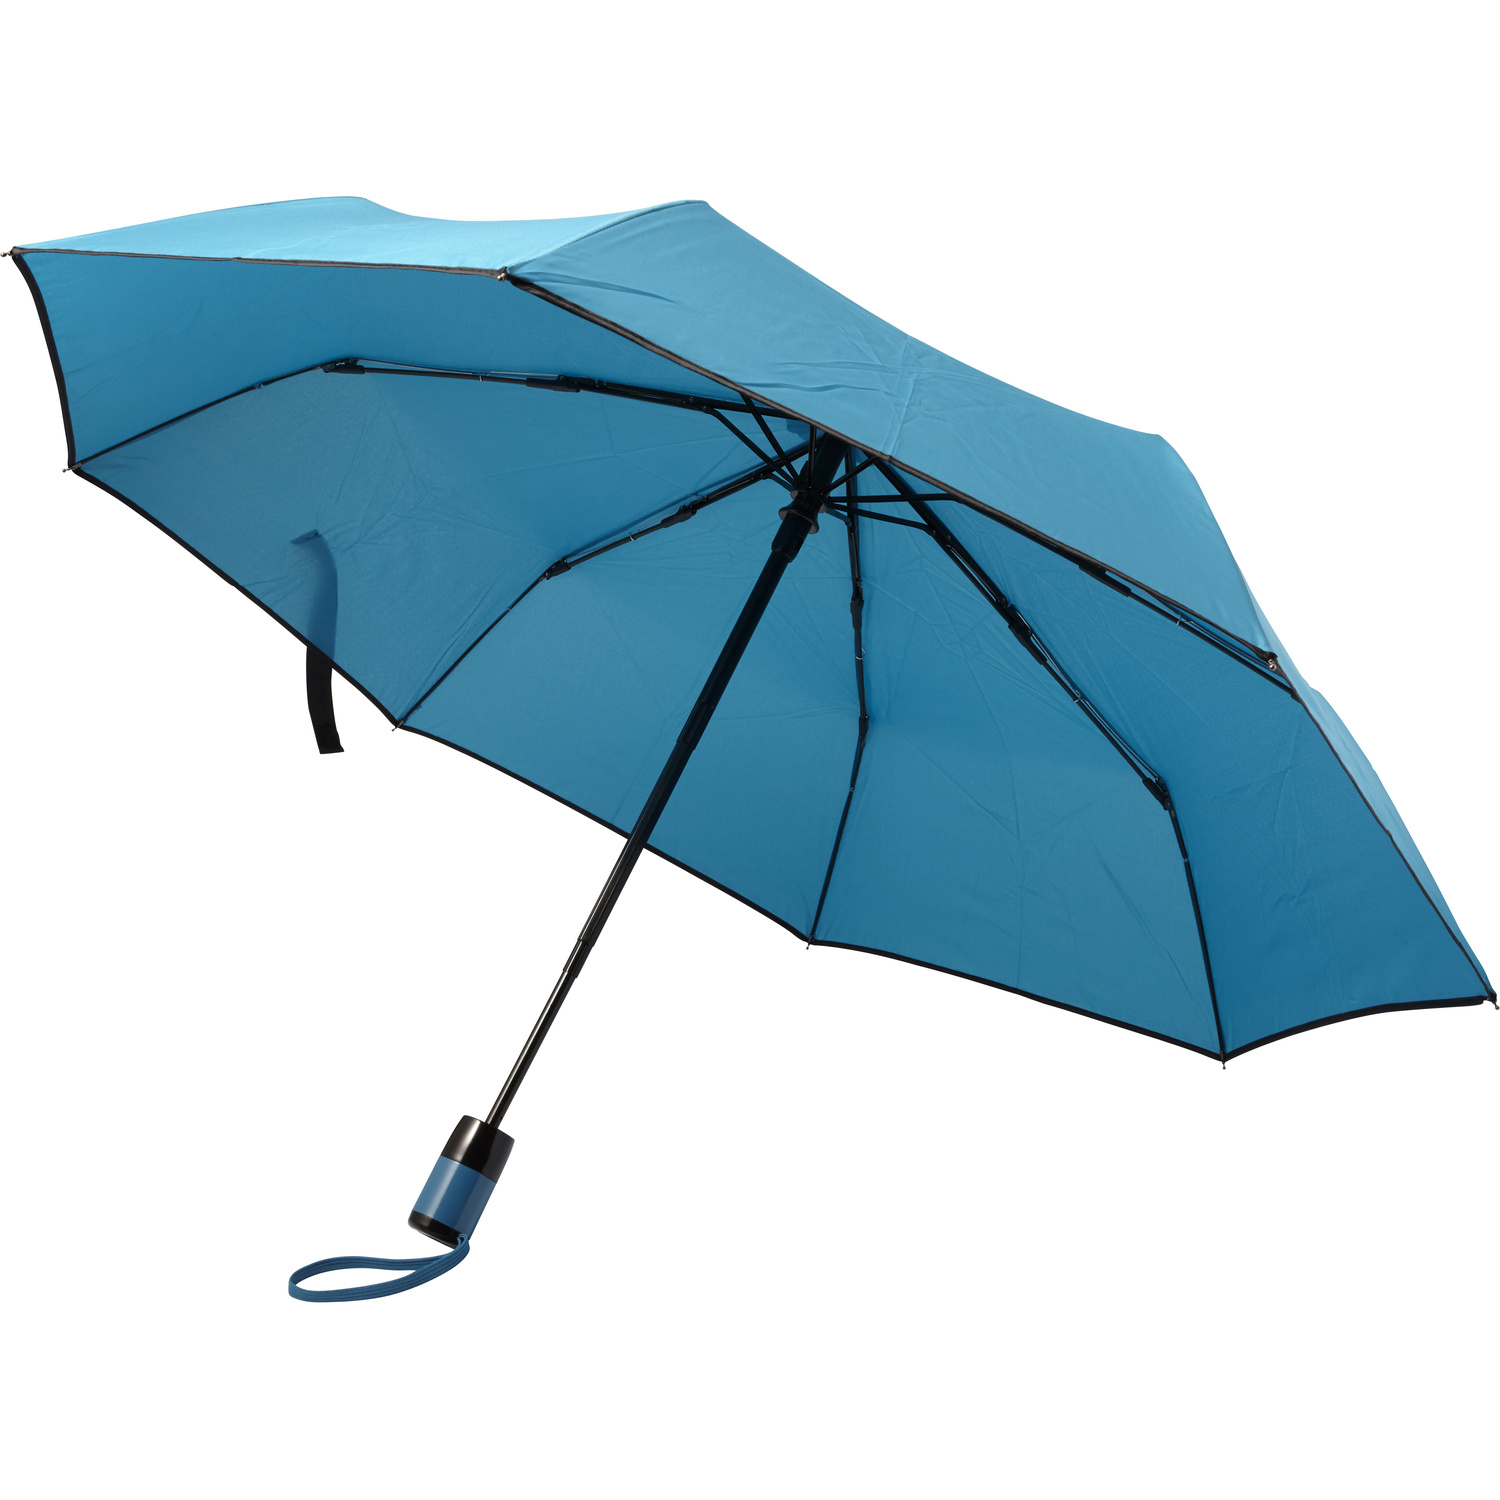 007964 018999999 3d045 rgt pro02 fal - Twin-layer umbrella